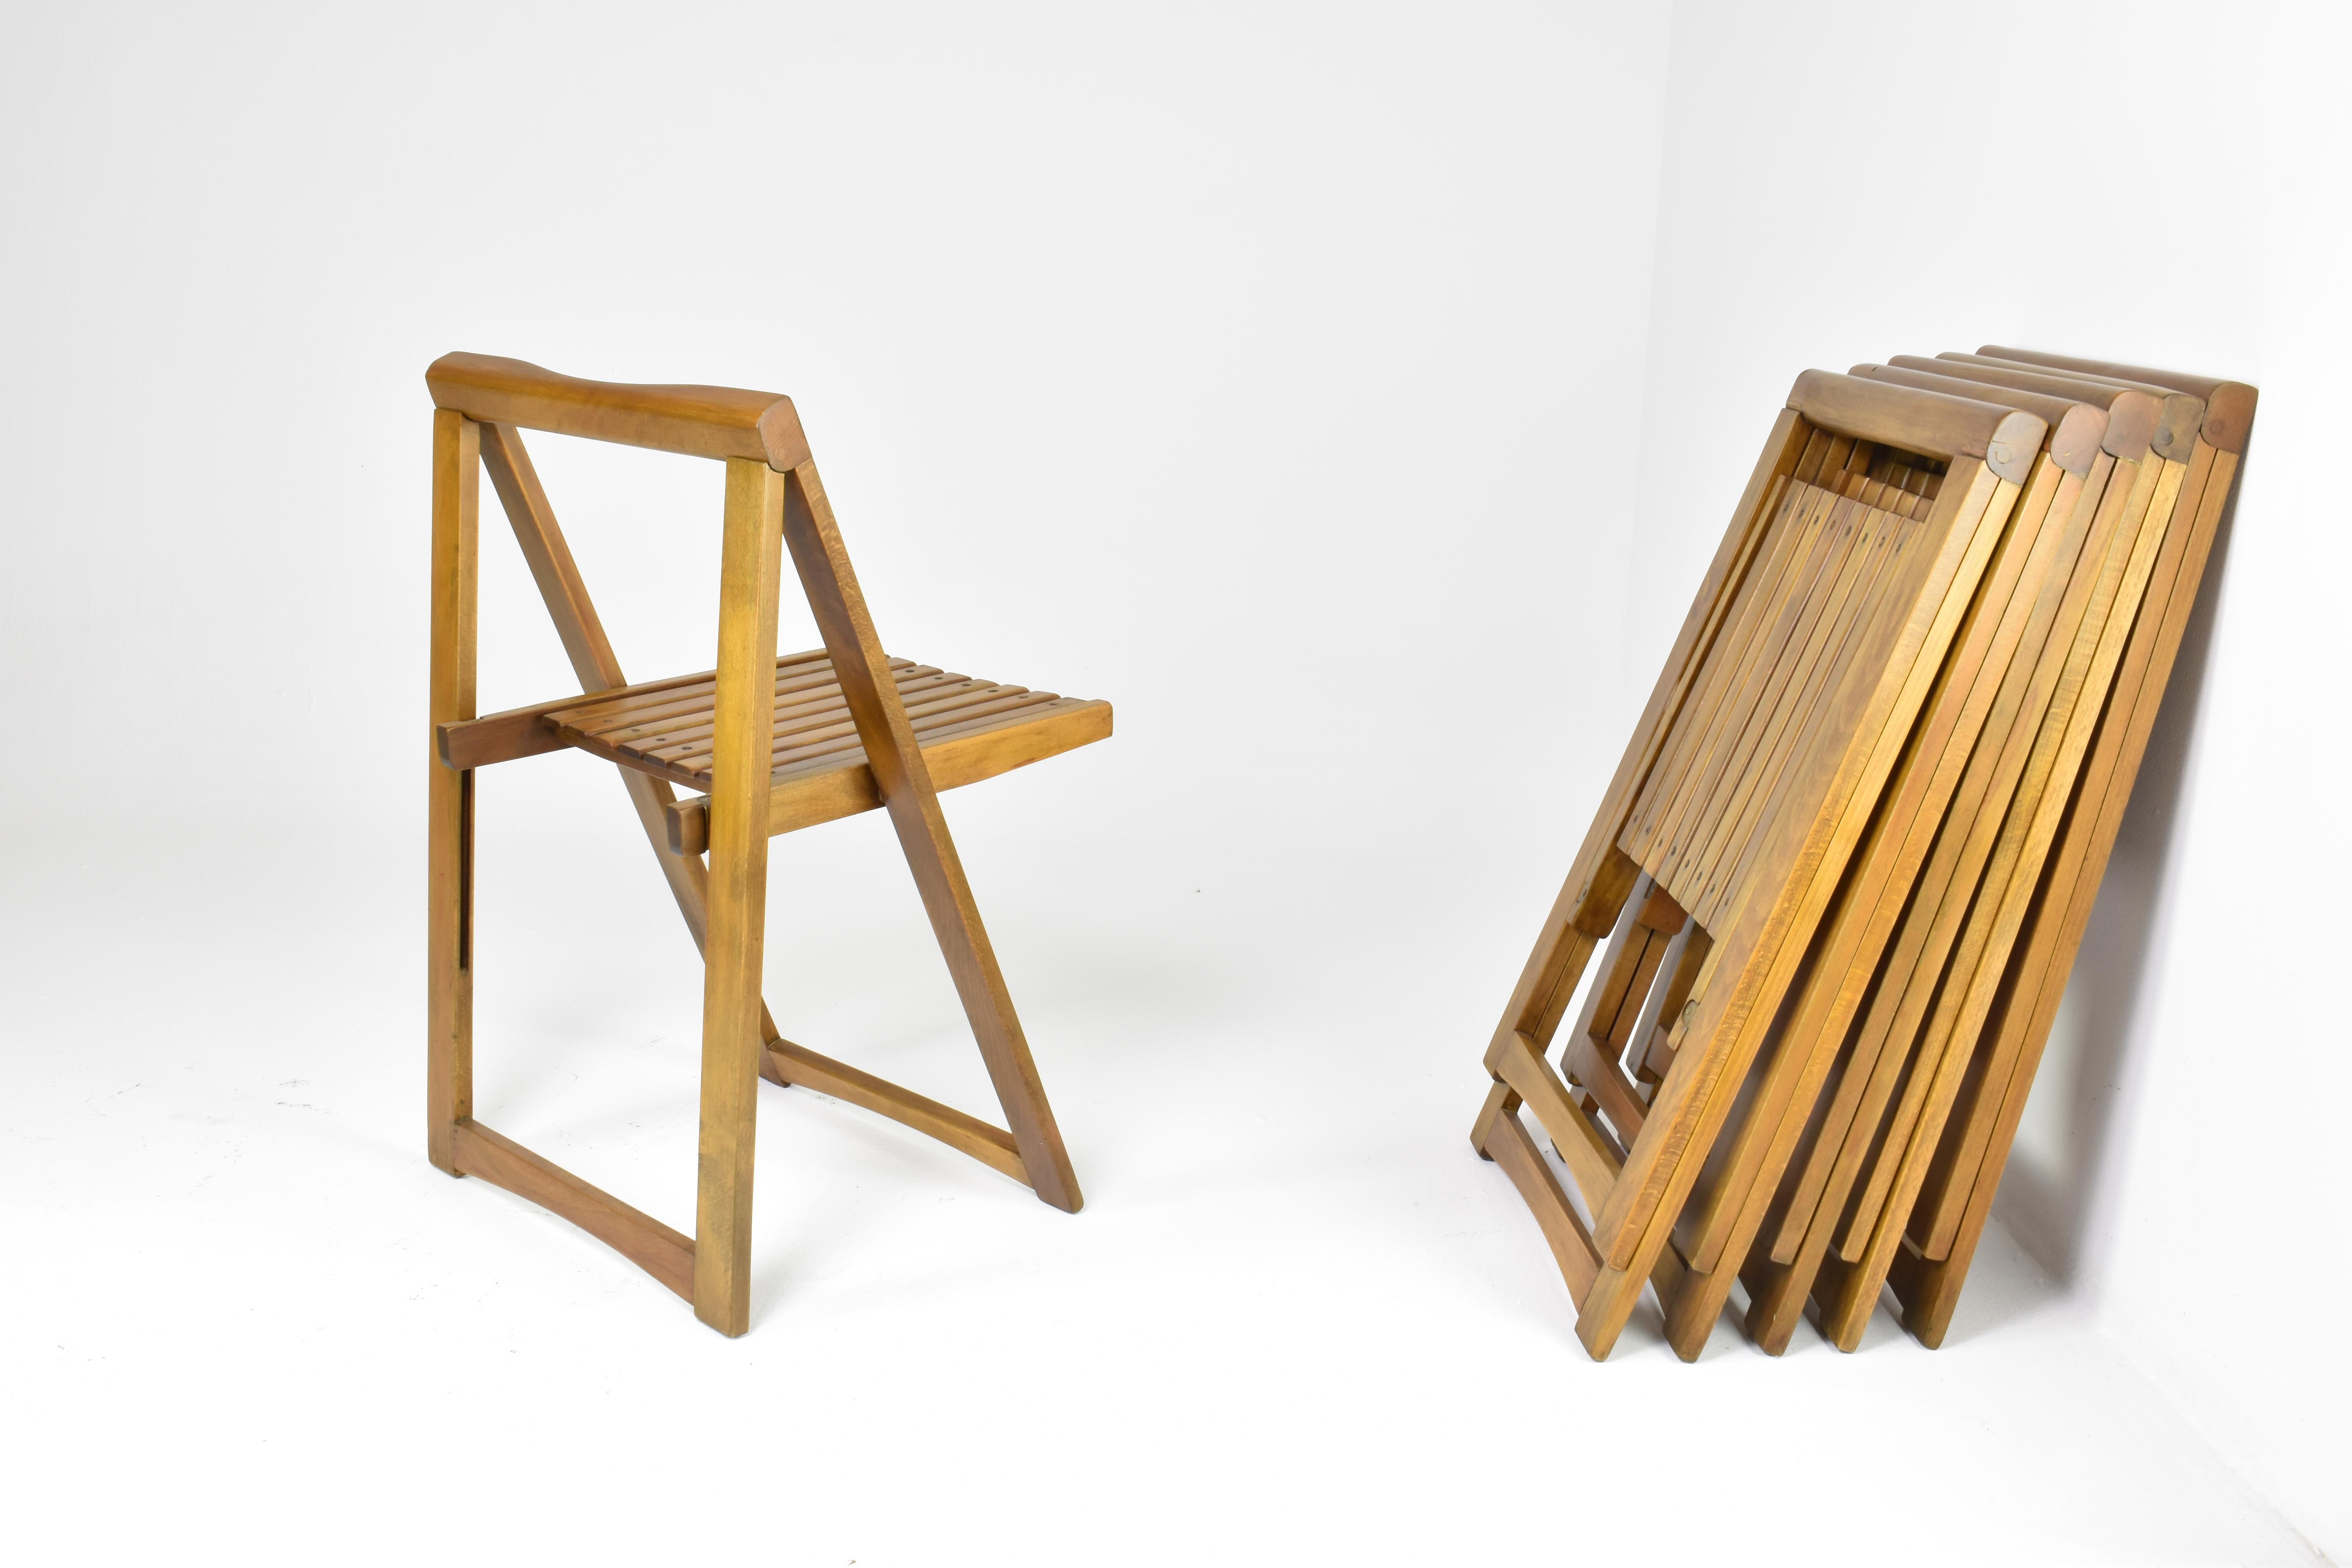 Ein Satz von sechs klappbaren italienischen Stühlen oder Gartenstühlen aus massivem Buchenholz, entworfen von Aldo Jacober für Alberto Bazzani in den 1960er Jahren.
 Diese Stühle, die für ihre exquisite Handwerkskunst und ihr zeitloses Design